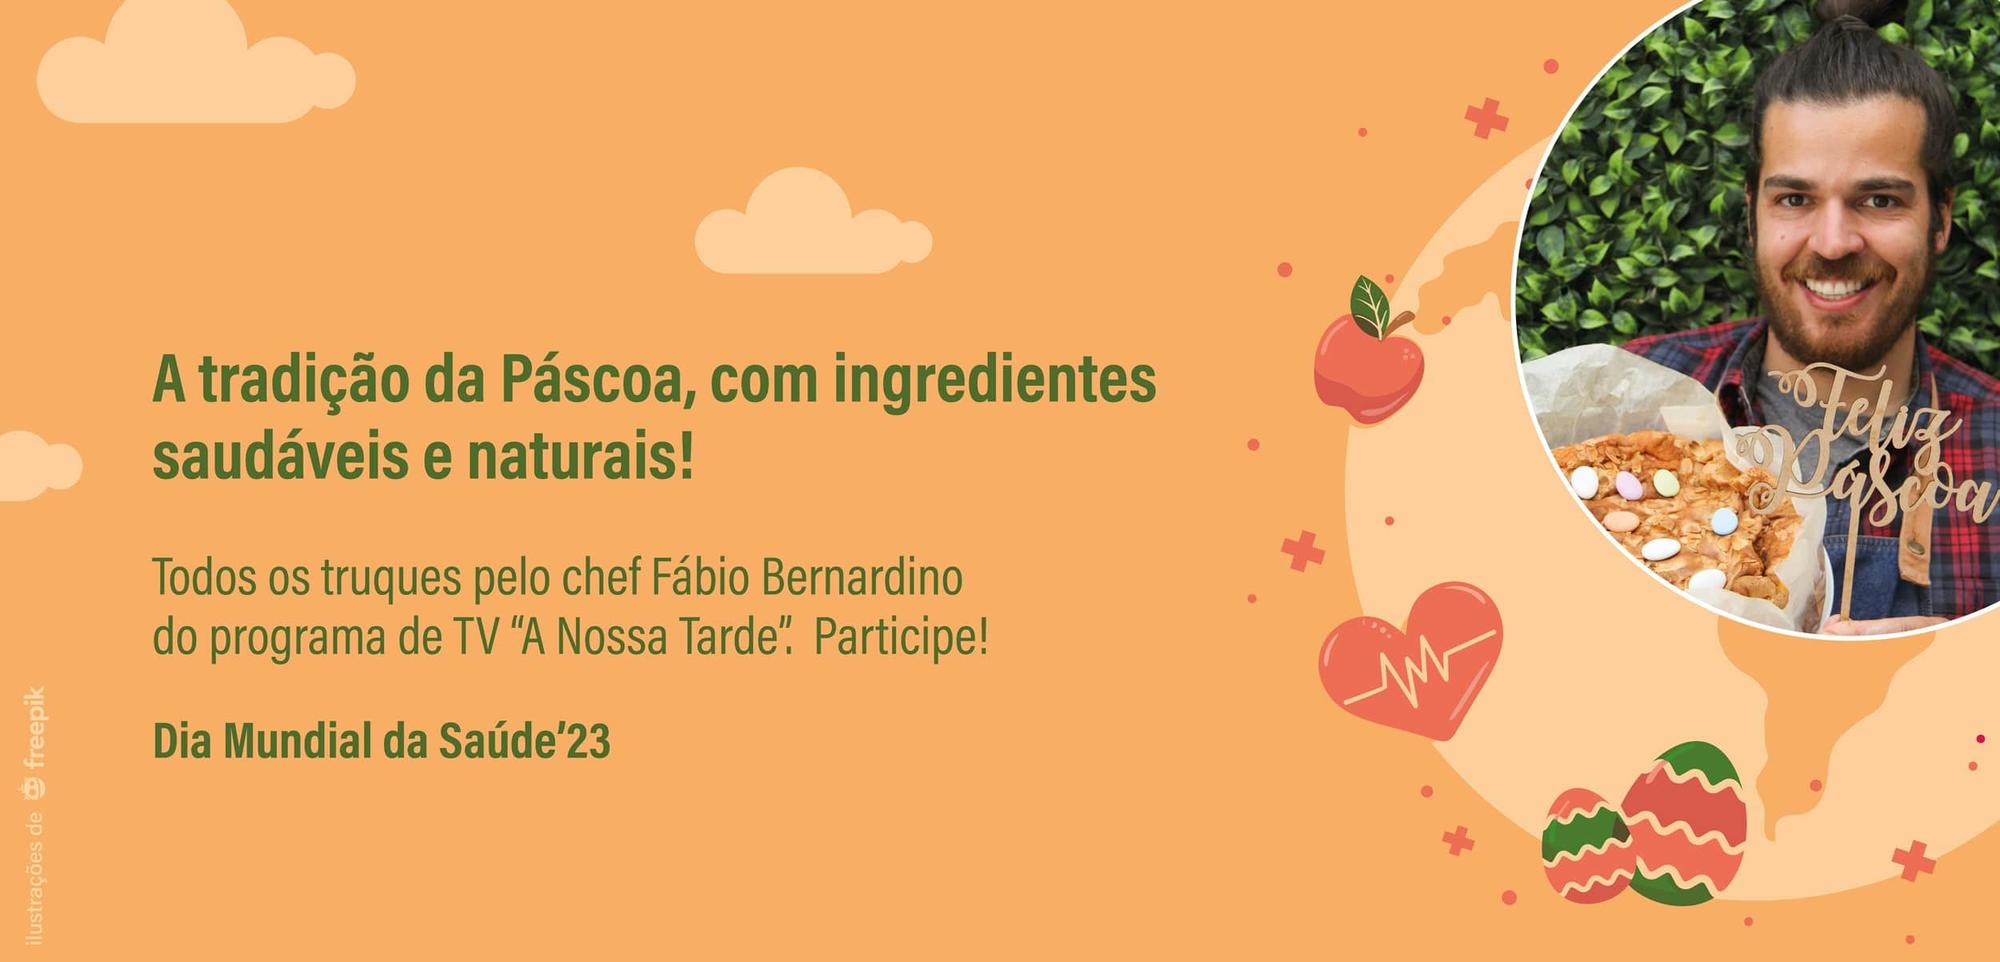 Dia Mundial da Saúde’23 – Showcooking com Chef Fábio Bernardino